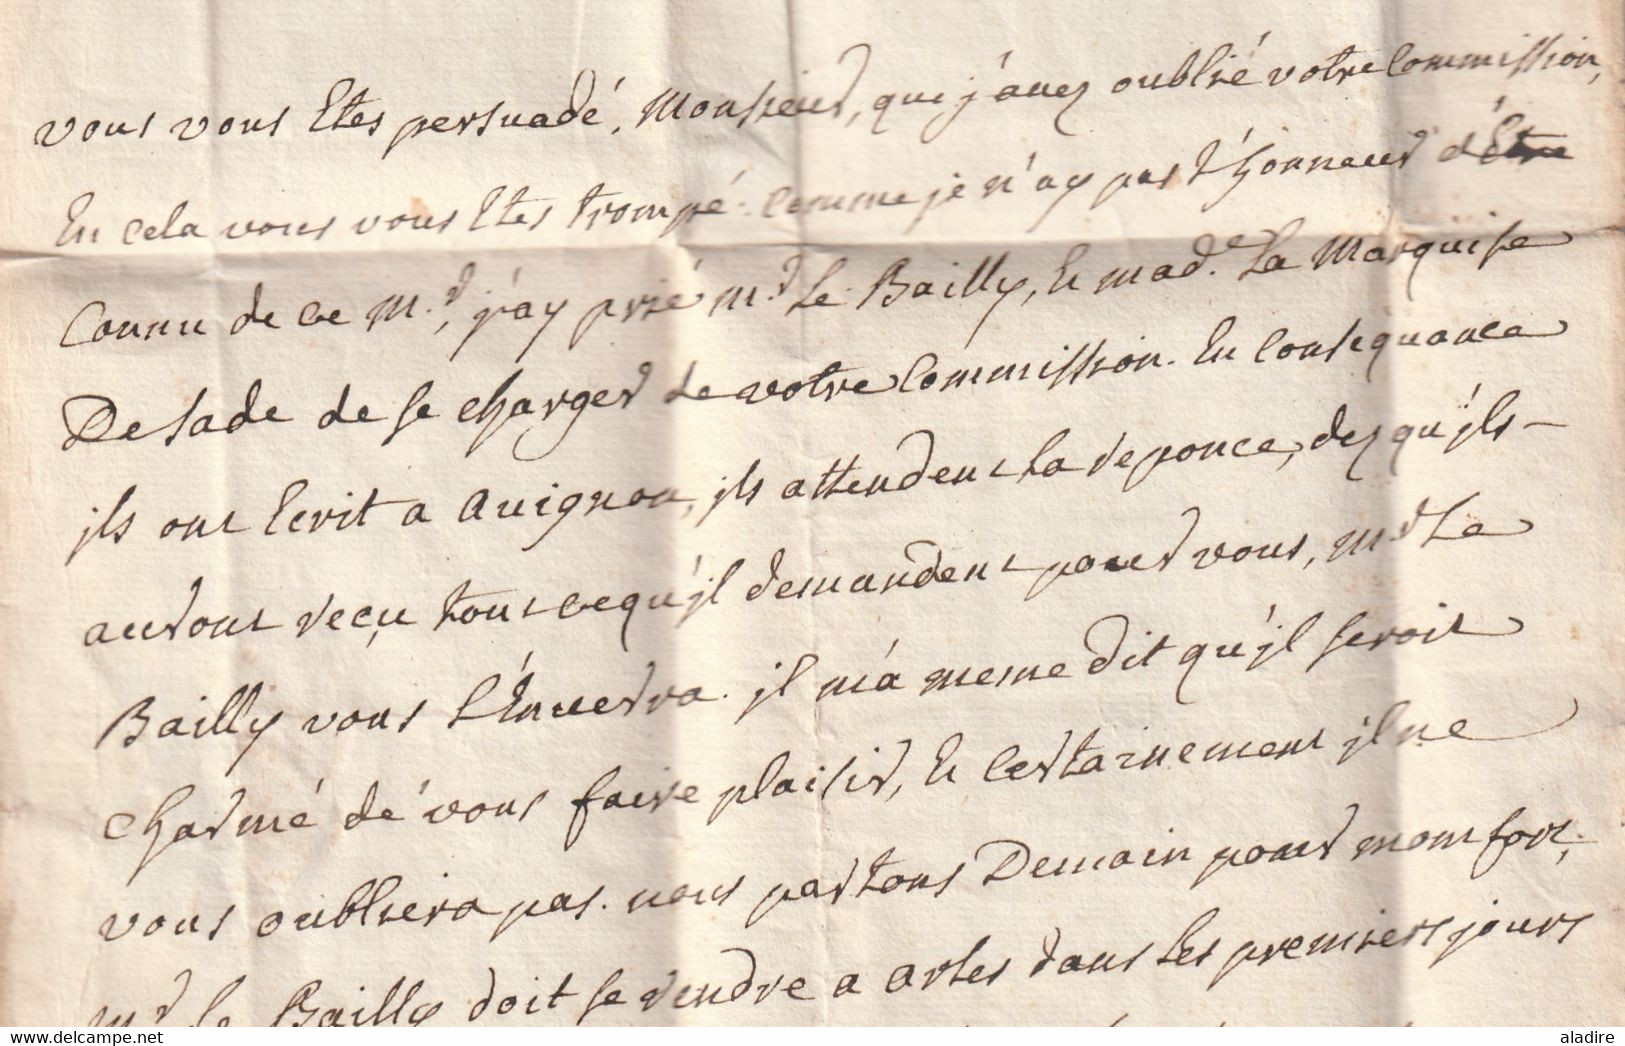 1750 - Marque Postale DAIX - 20 x 5 mm -  sur lettre pliée avec correspondance vers Grenoble, Isère - taxe 7